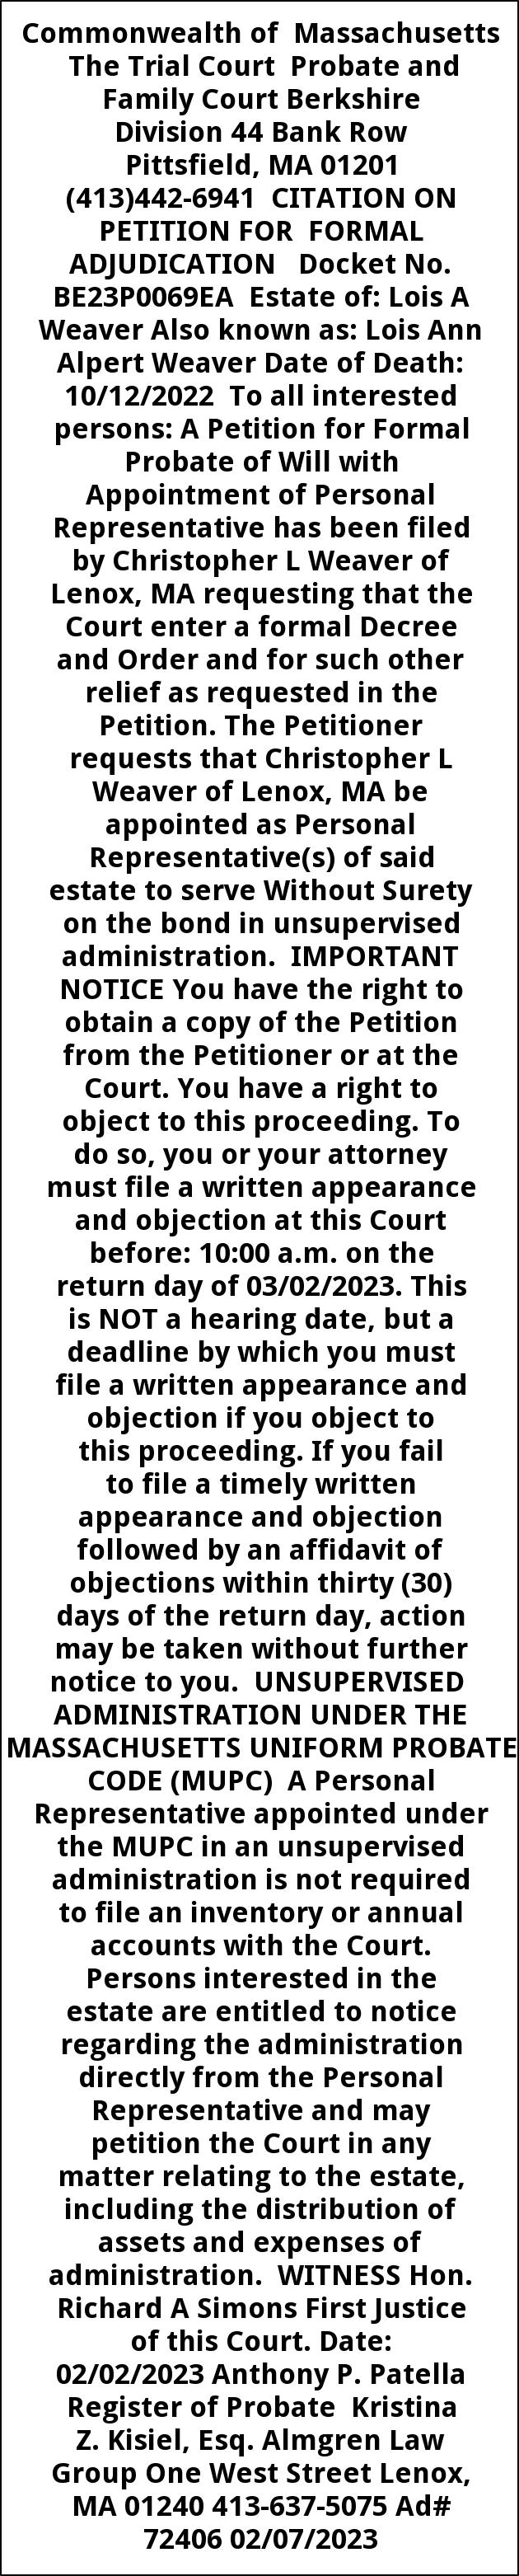 Citation On Petition for Formal Adjudication